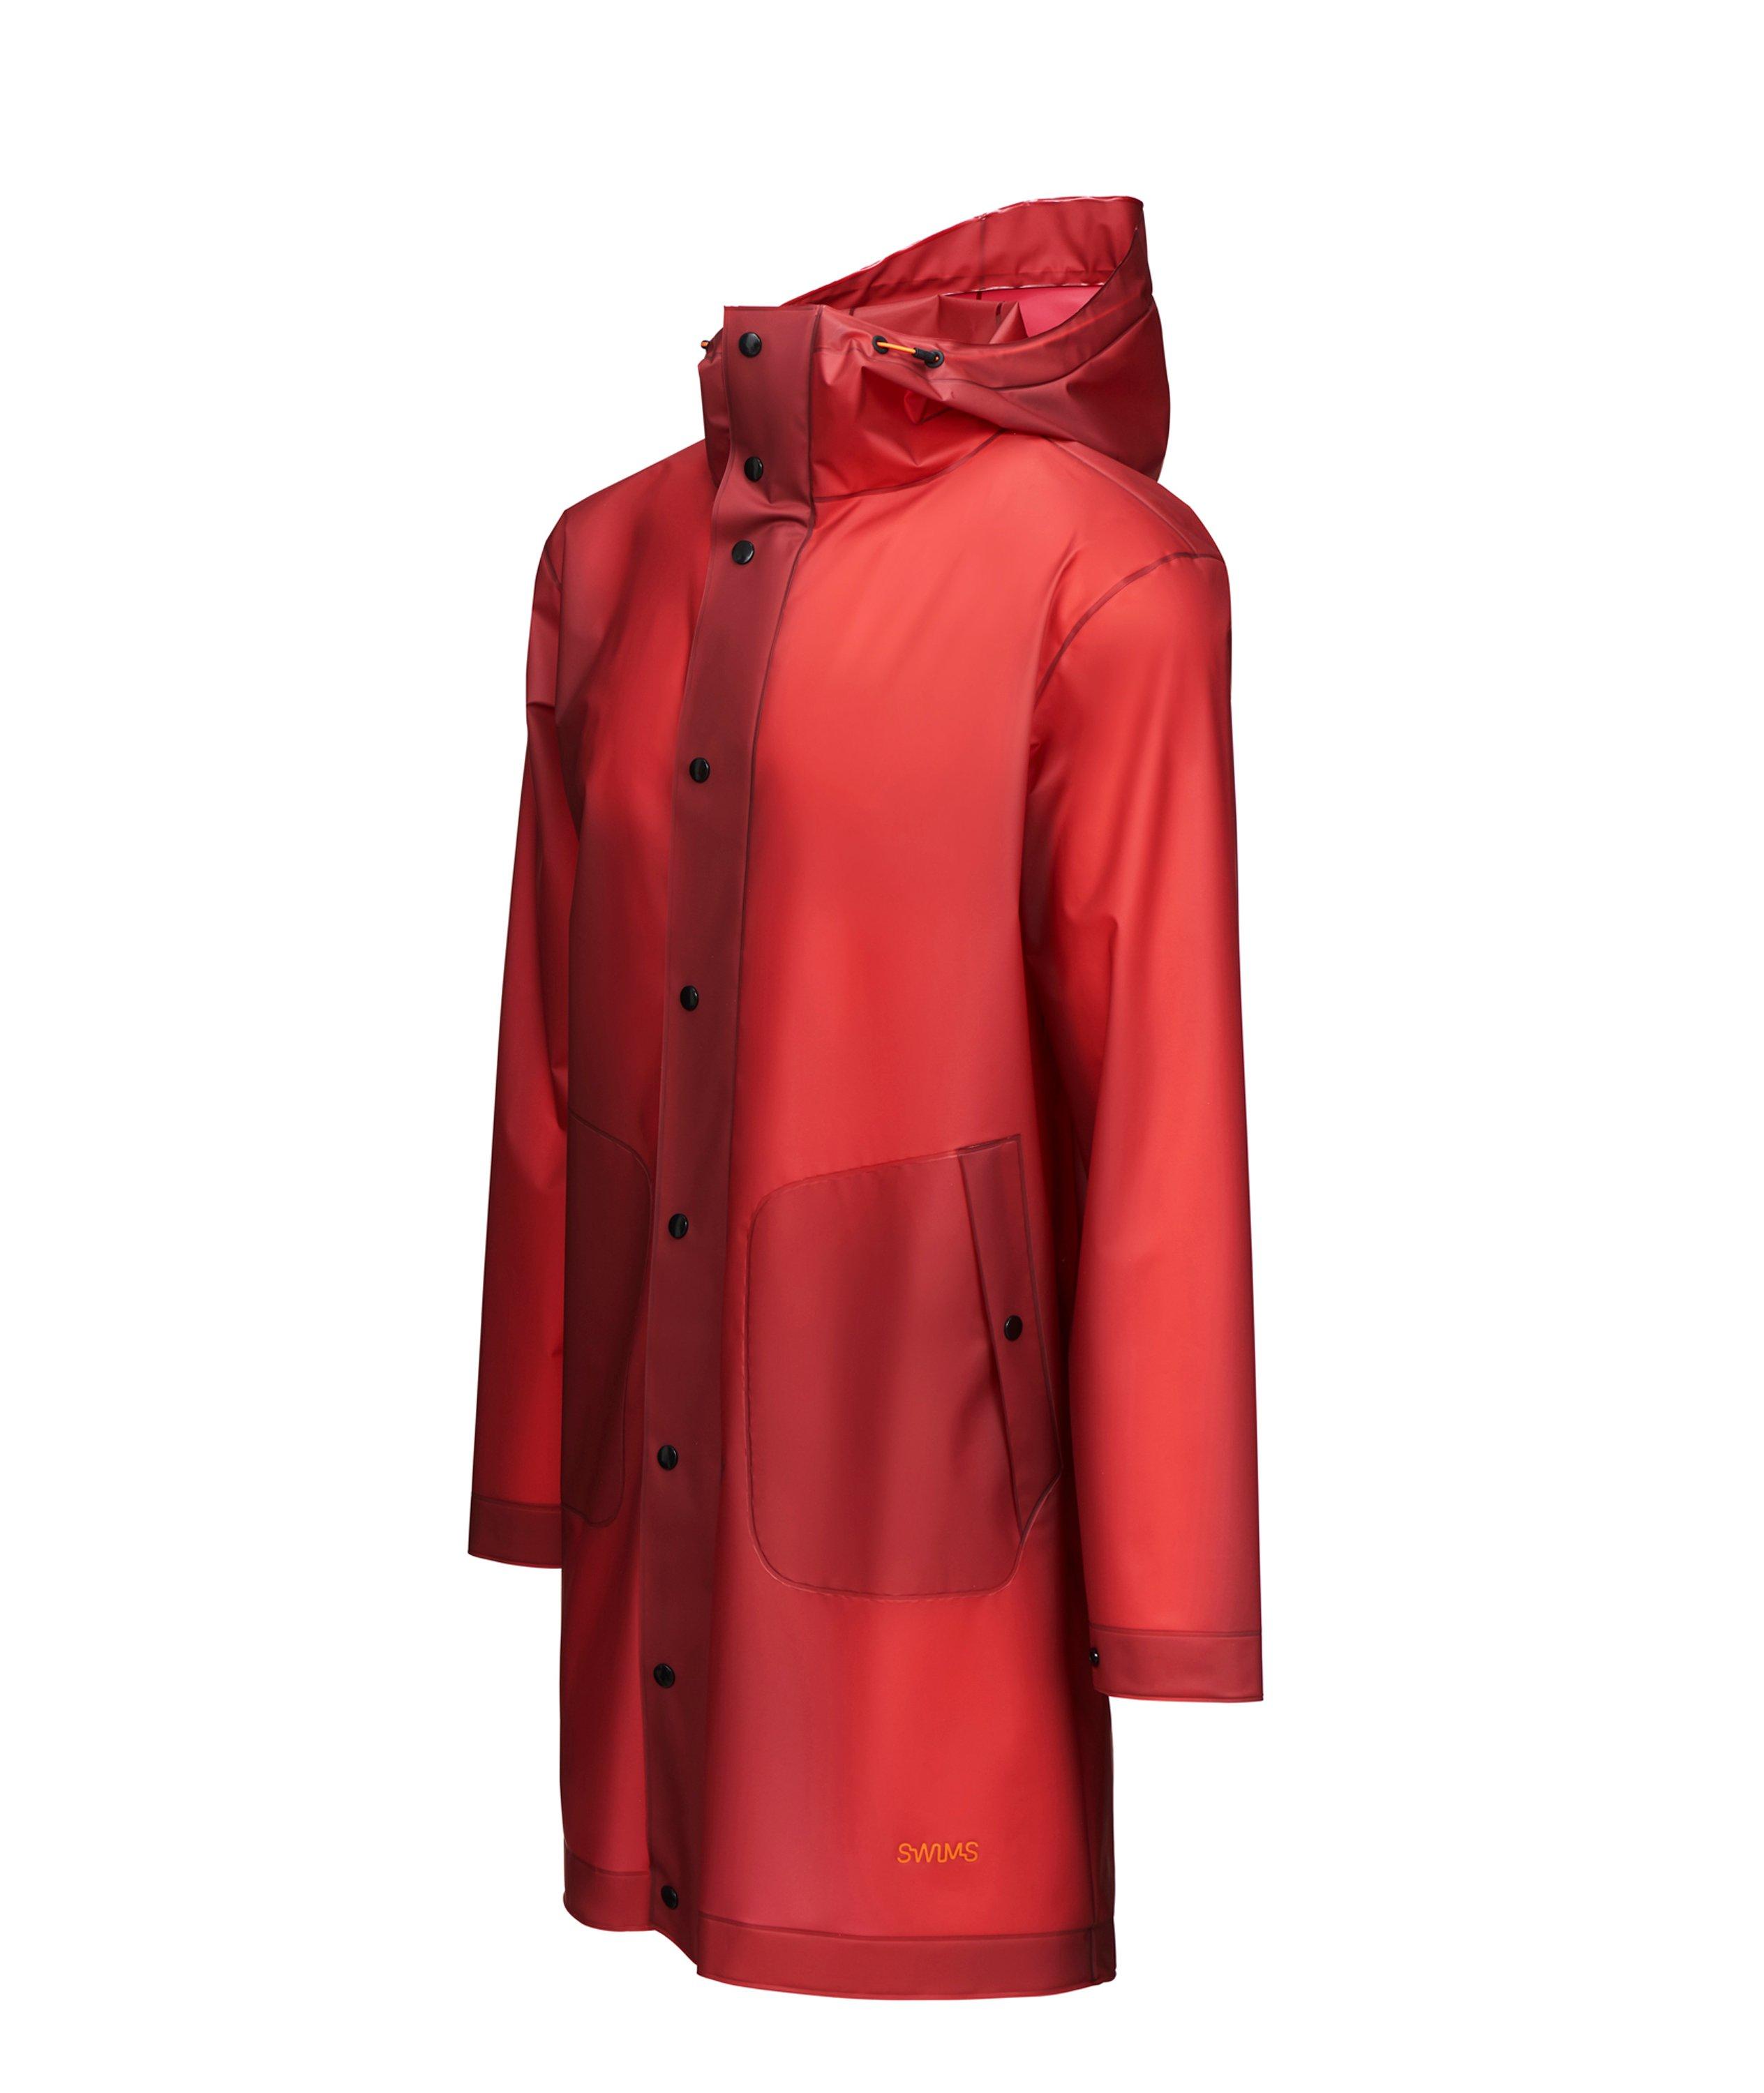 Basel Raincoat image 1